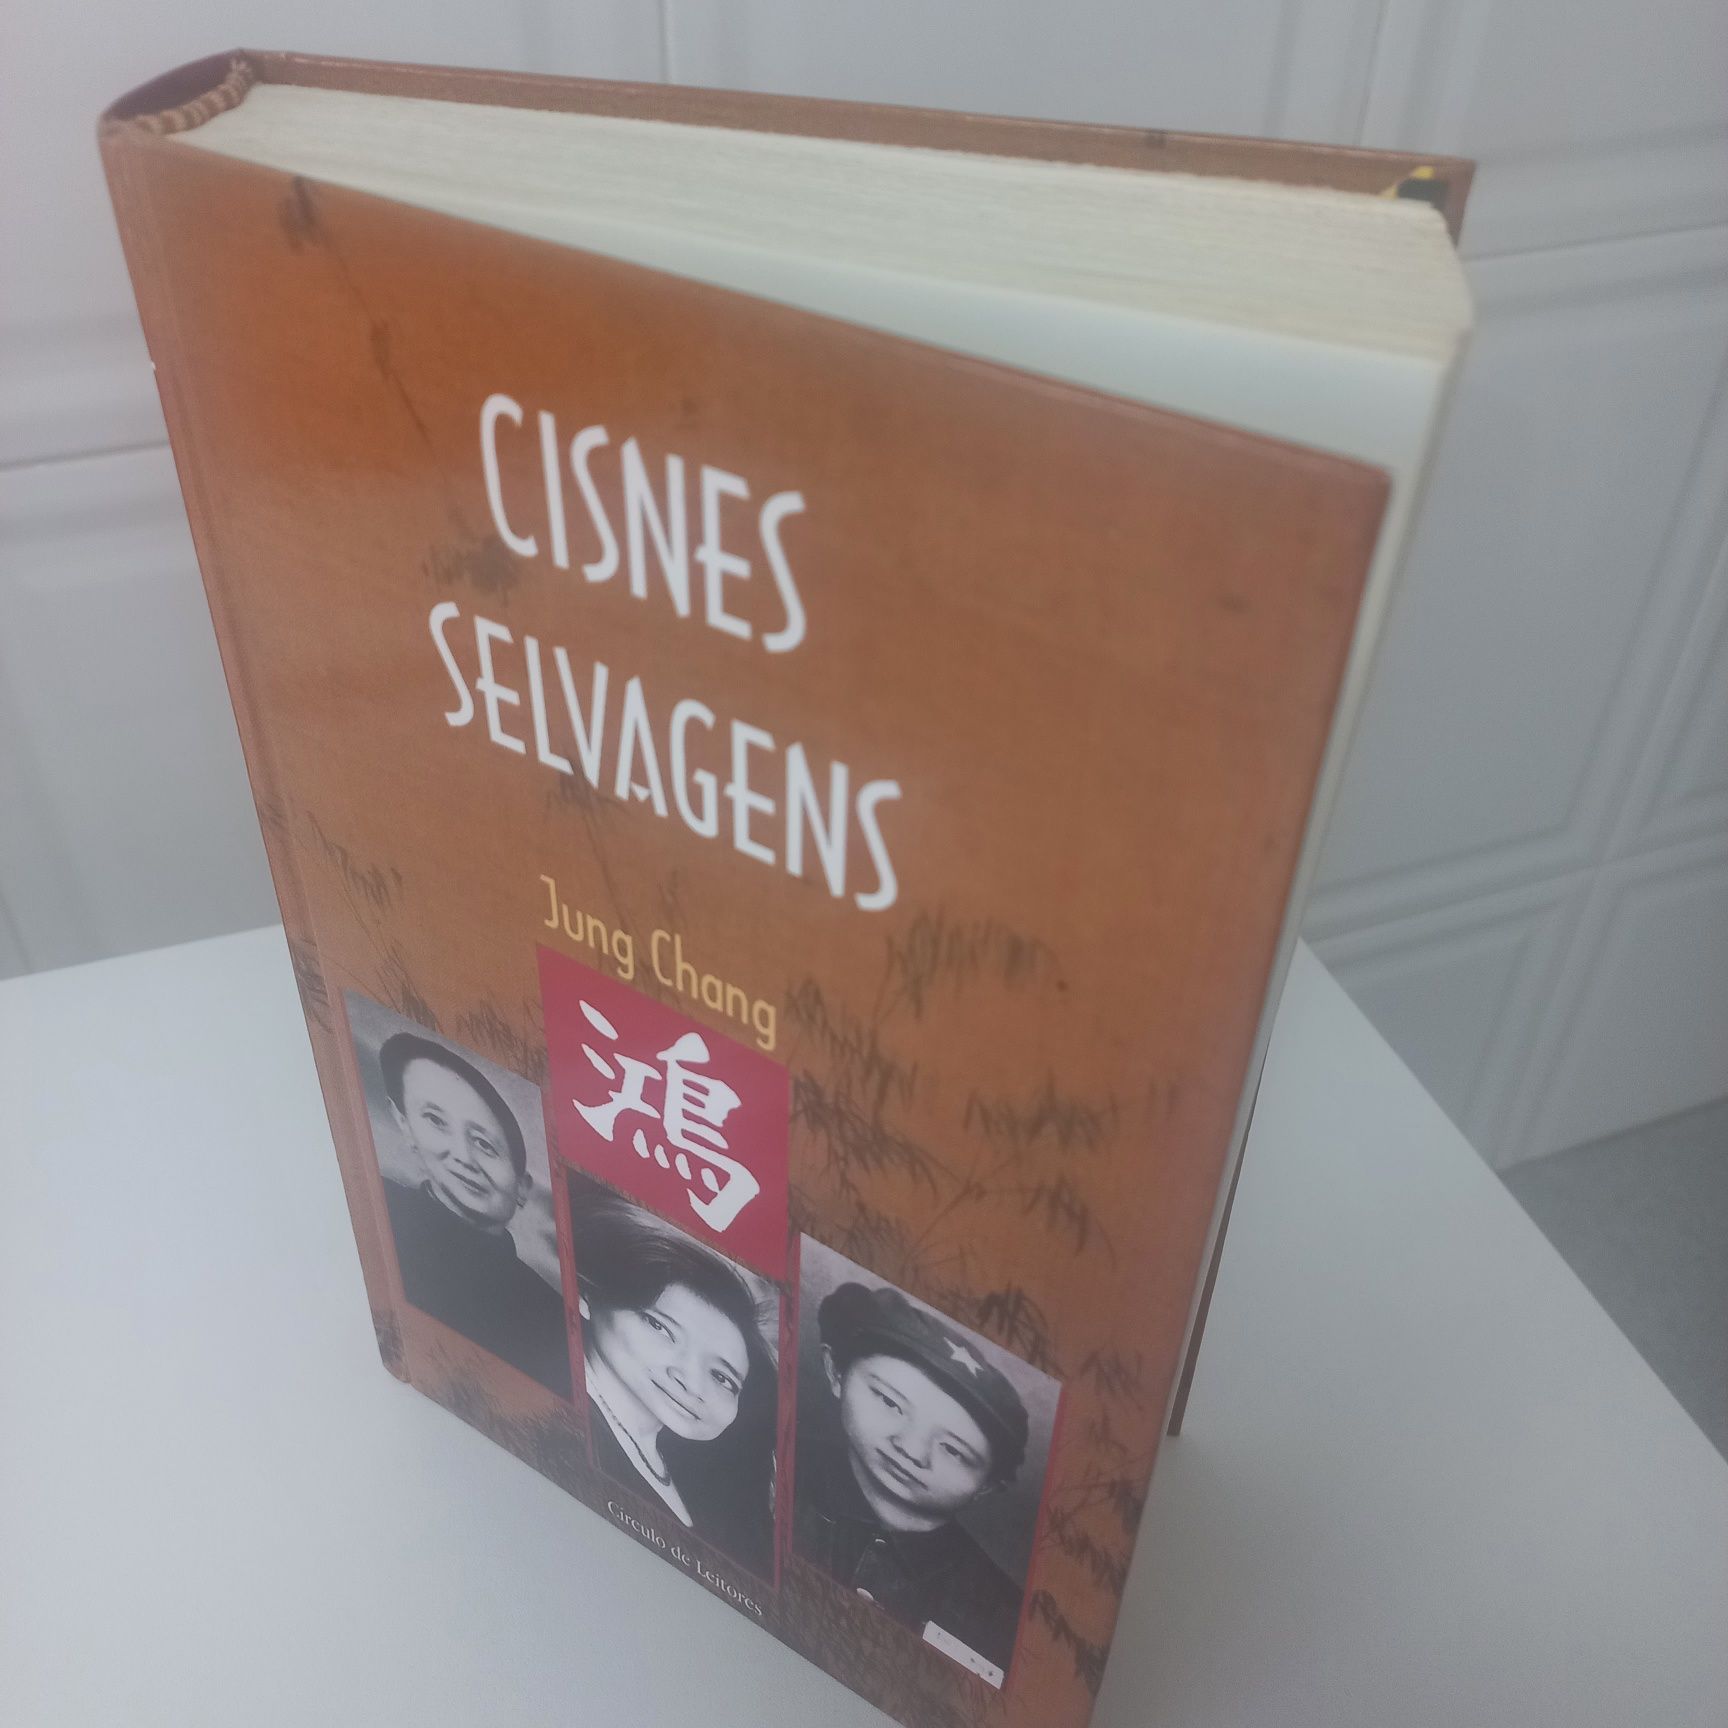 Livro: Cisnes Selvagens de Jung Chang